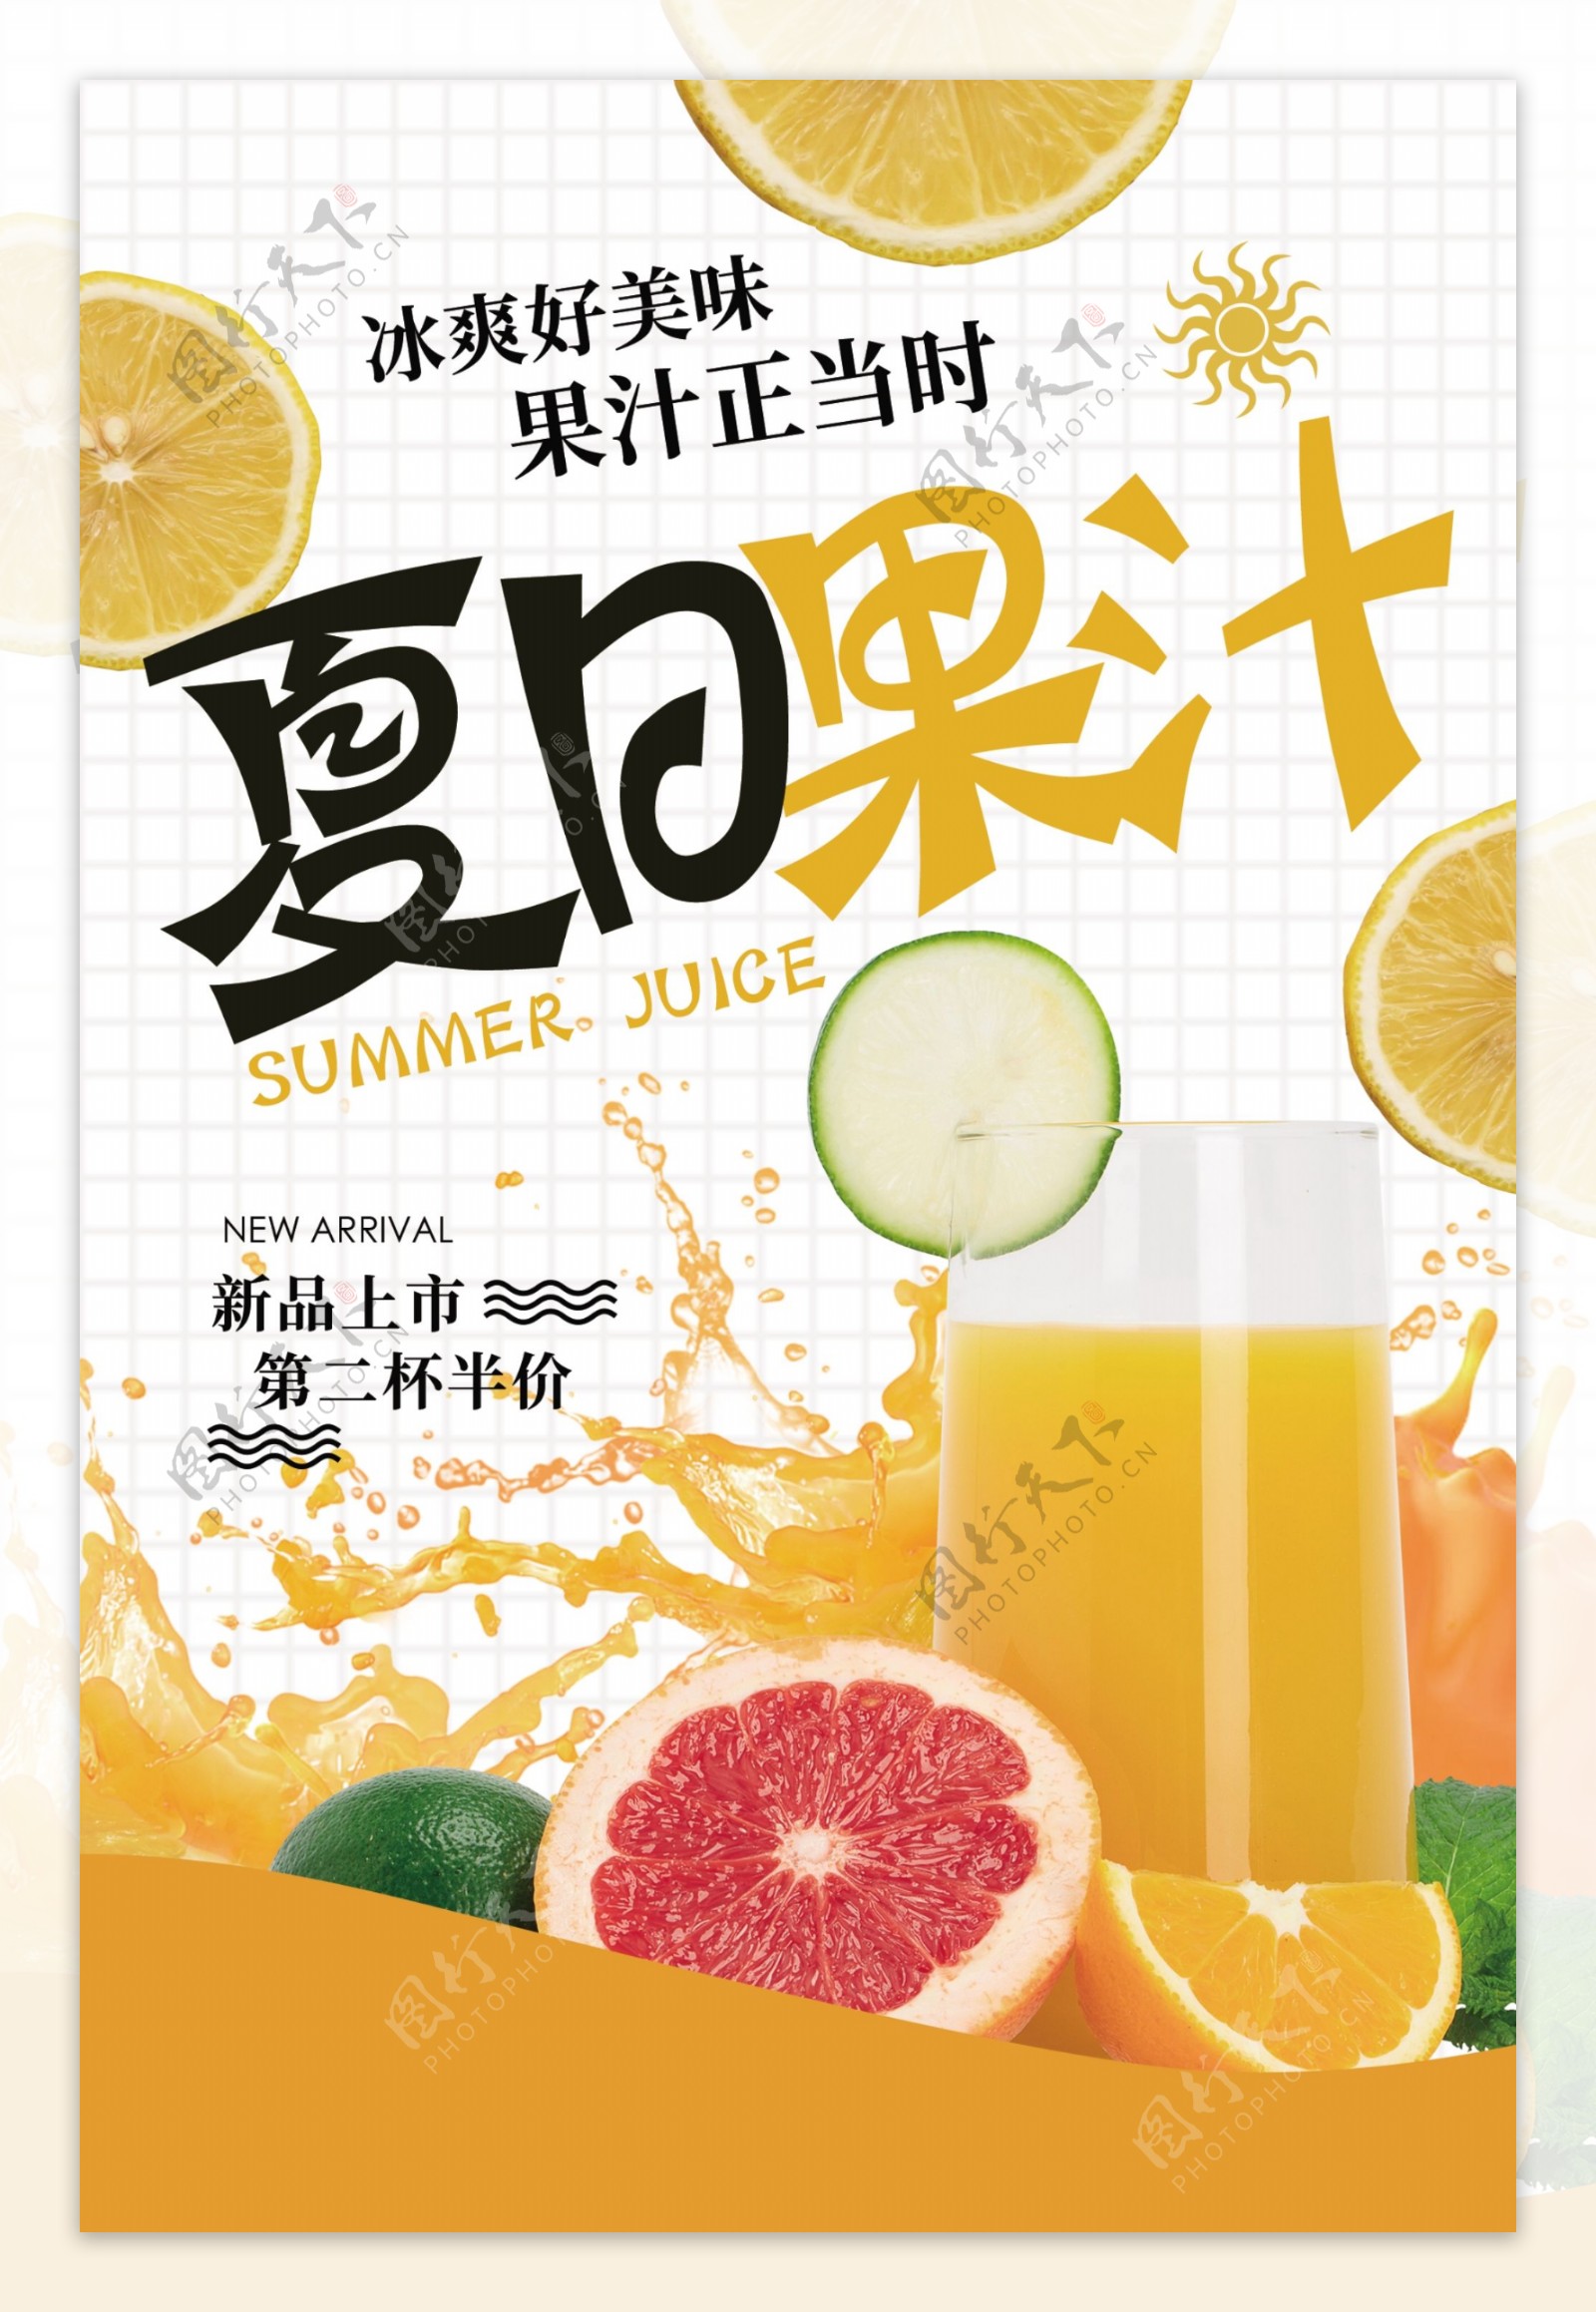 夏日果汁饮品活动促销海报素材